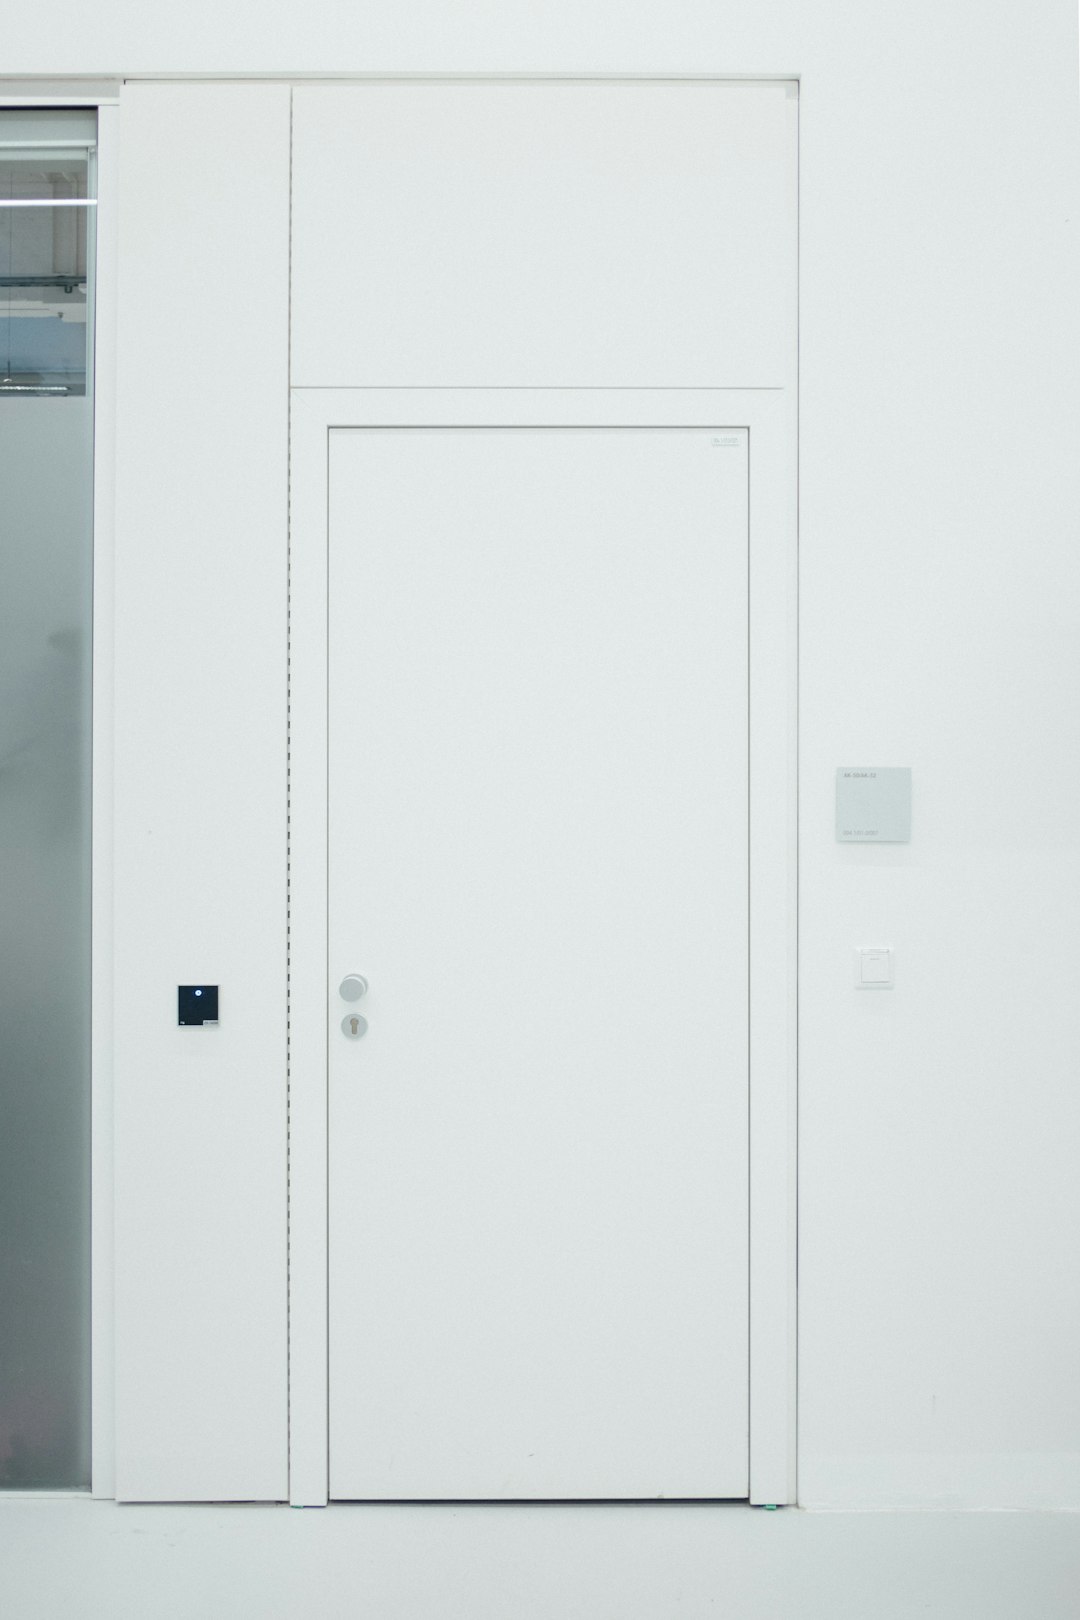  closed white door door frame